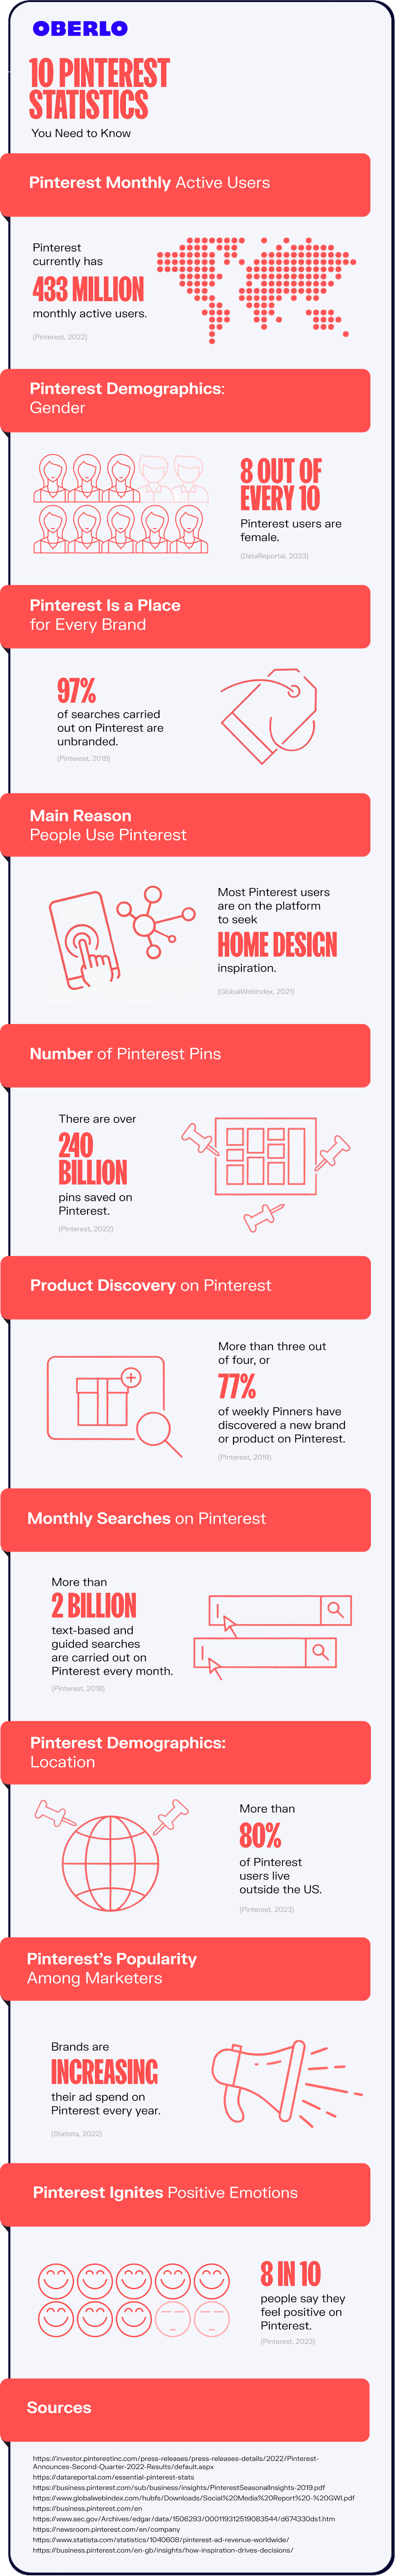 pinterest statistics full infographic